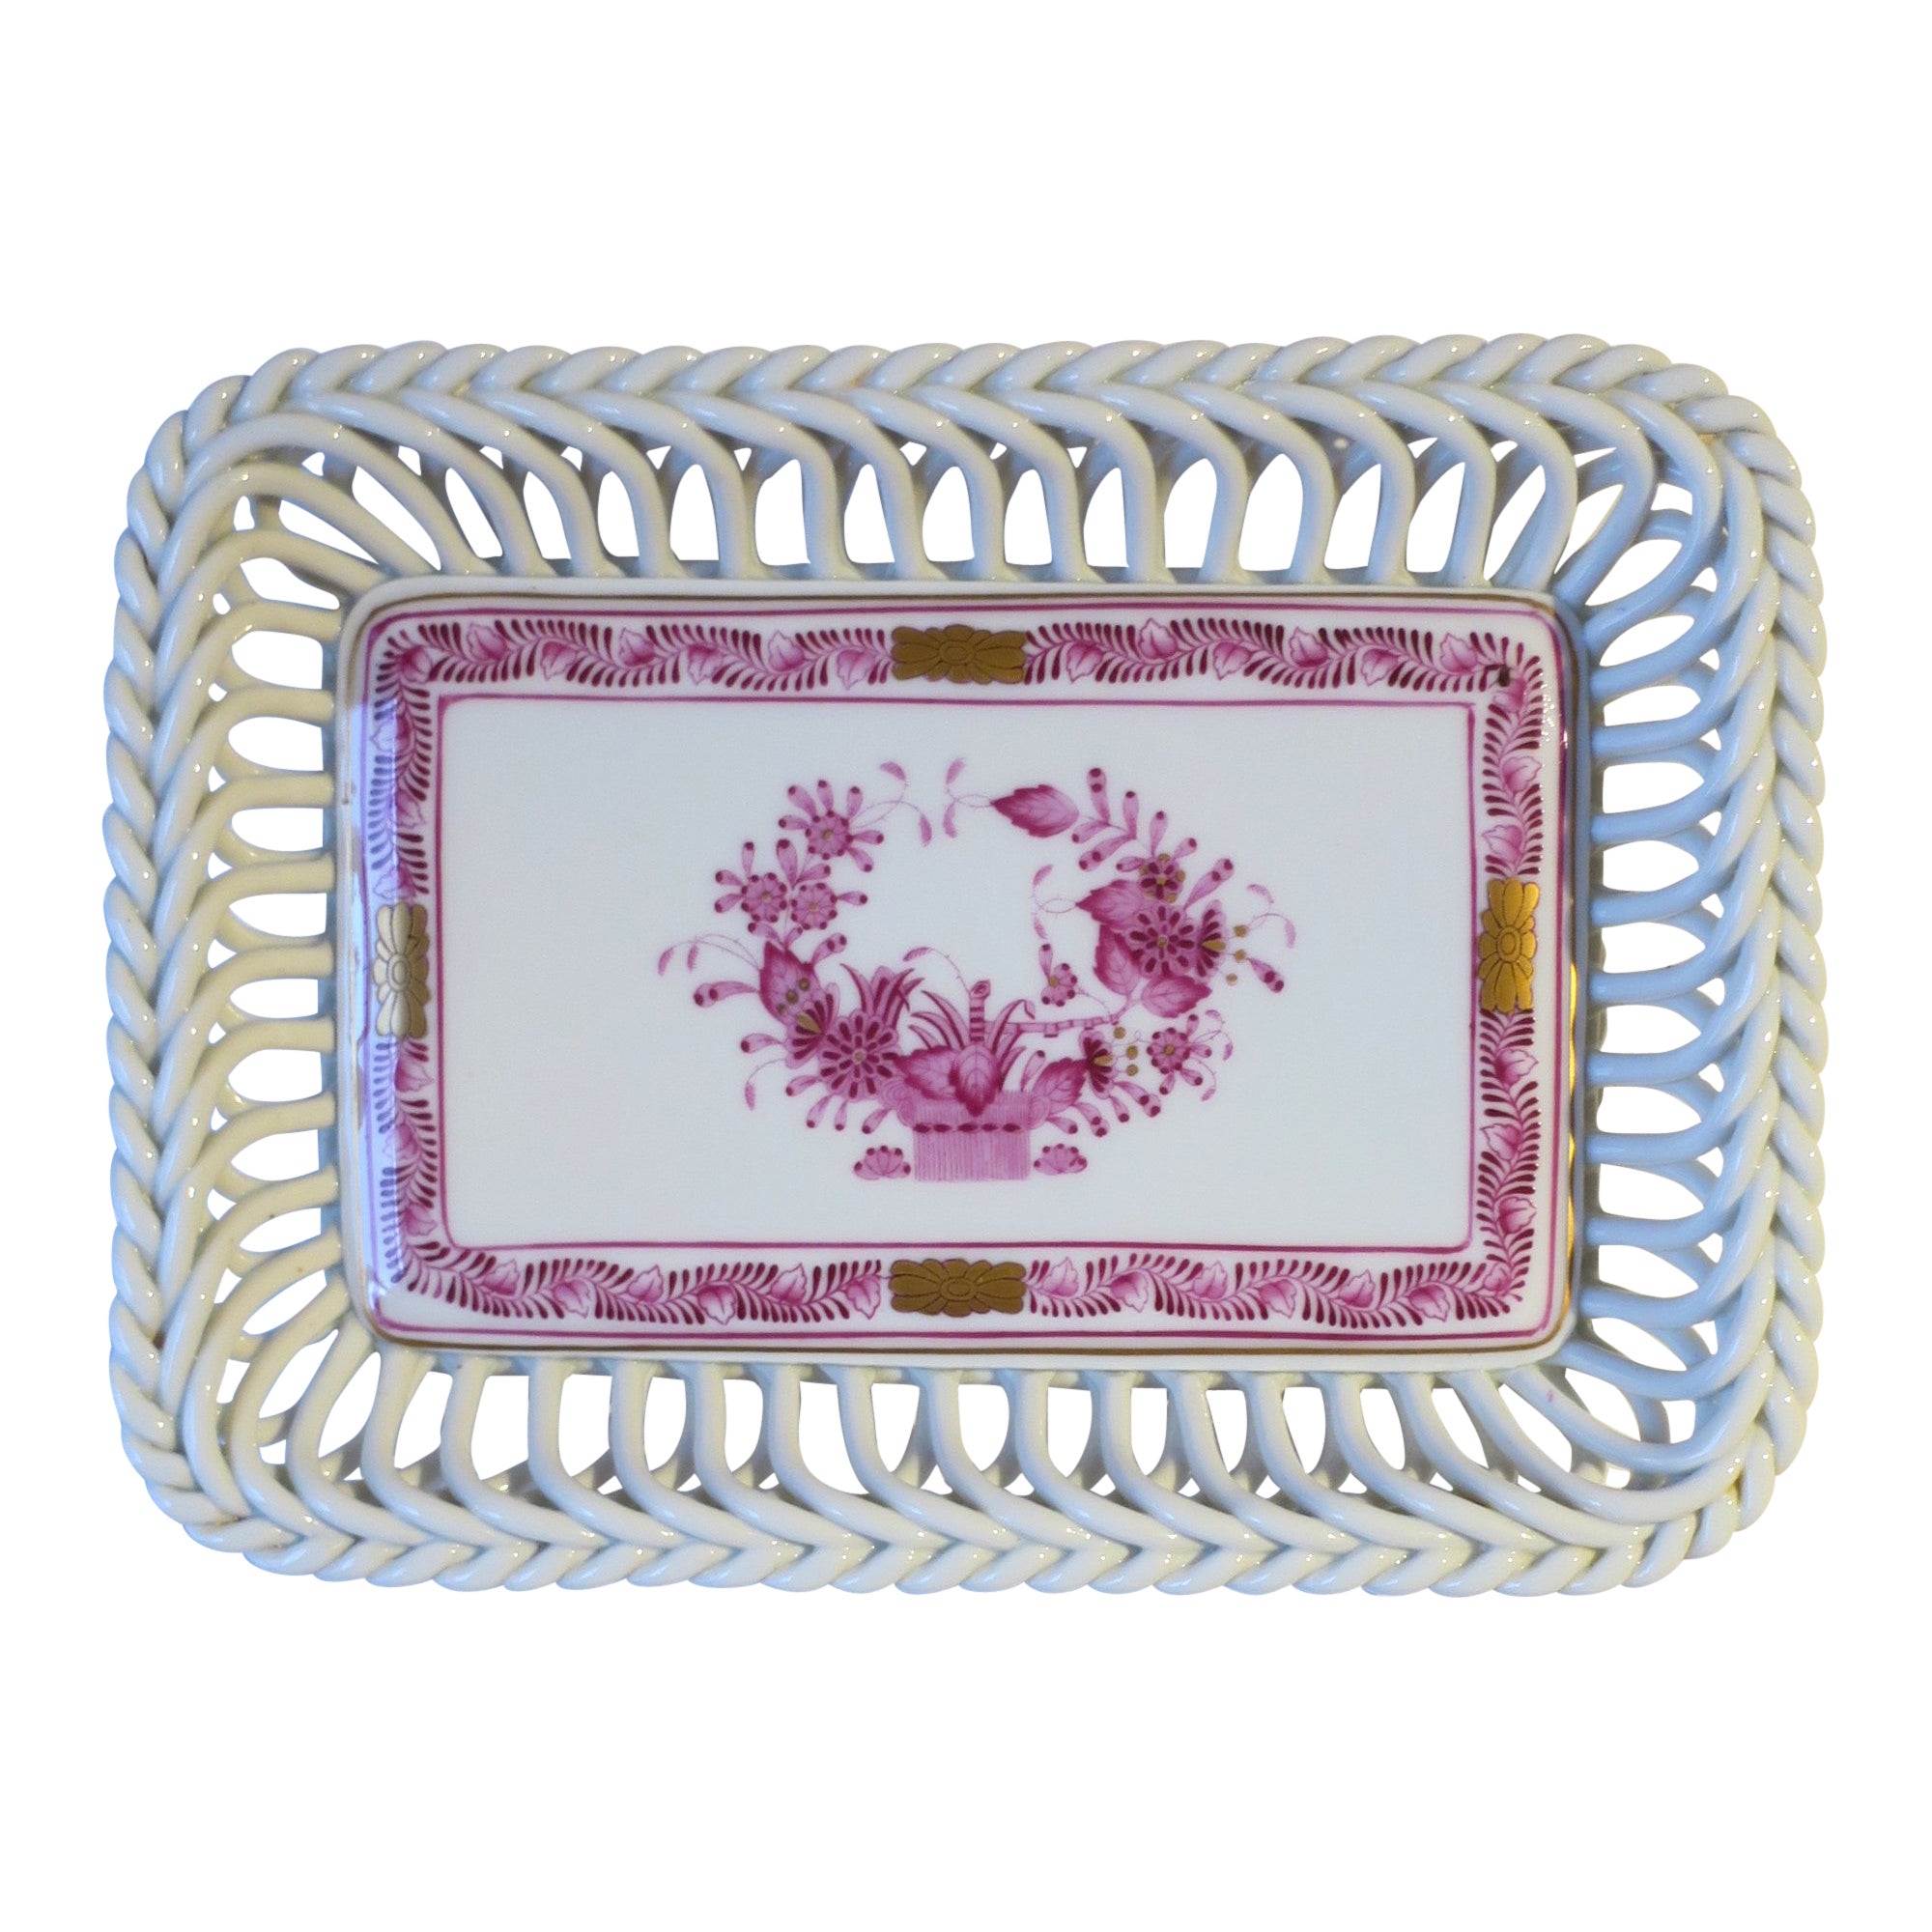 Ablageschale Schale aus weißem Porzellan von Herend mit rosa und goldenen Details